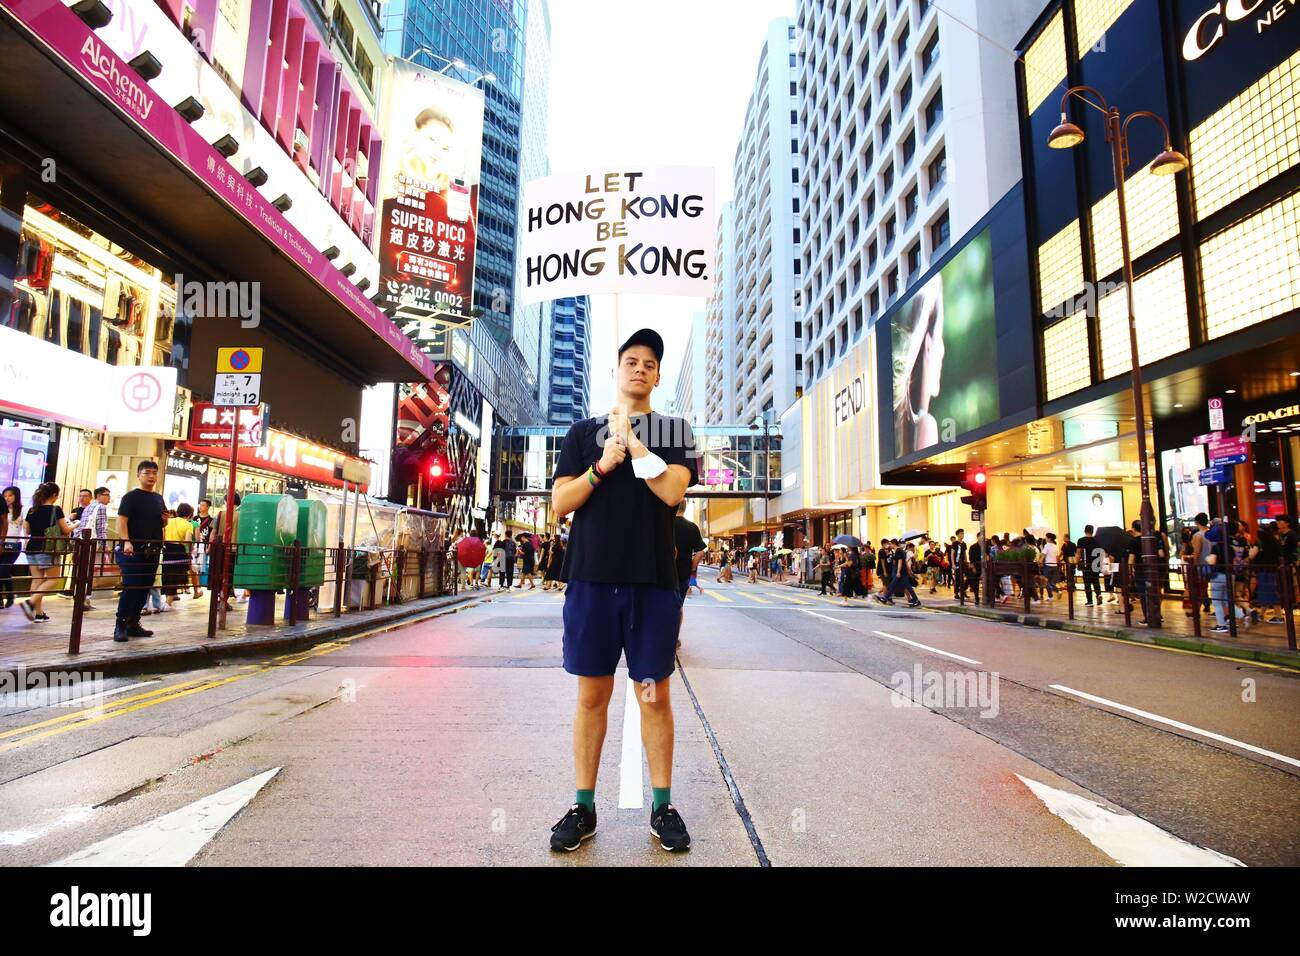 Hong Kong, China - Julio 07th, 2019. Los expatriados en Hong Kong muestran su apoyo a la ley de extradición anti-marzo. Crédito: Gonzales Foto/Alamy Live News Foto de stock